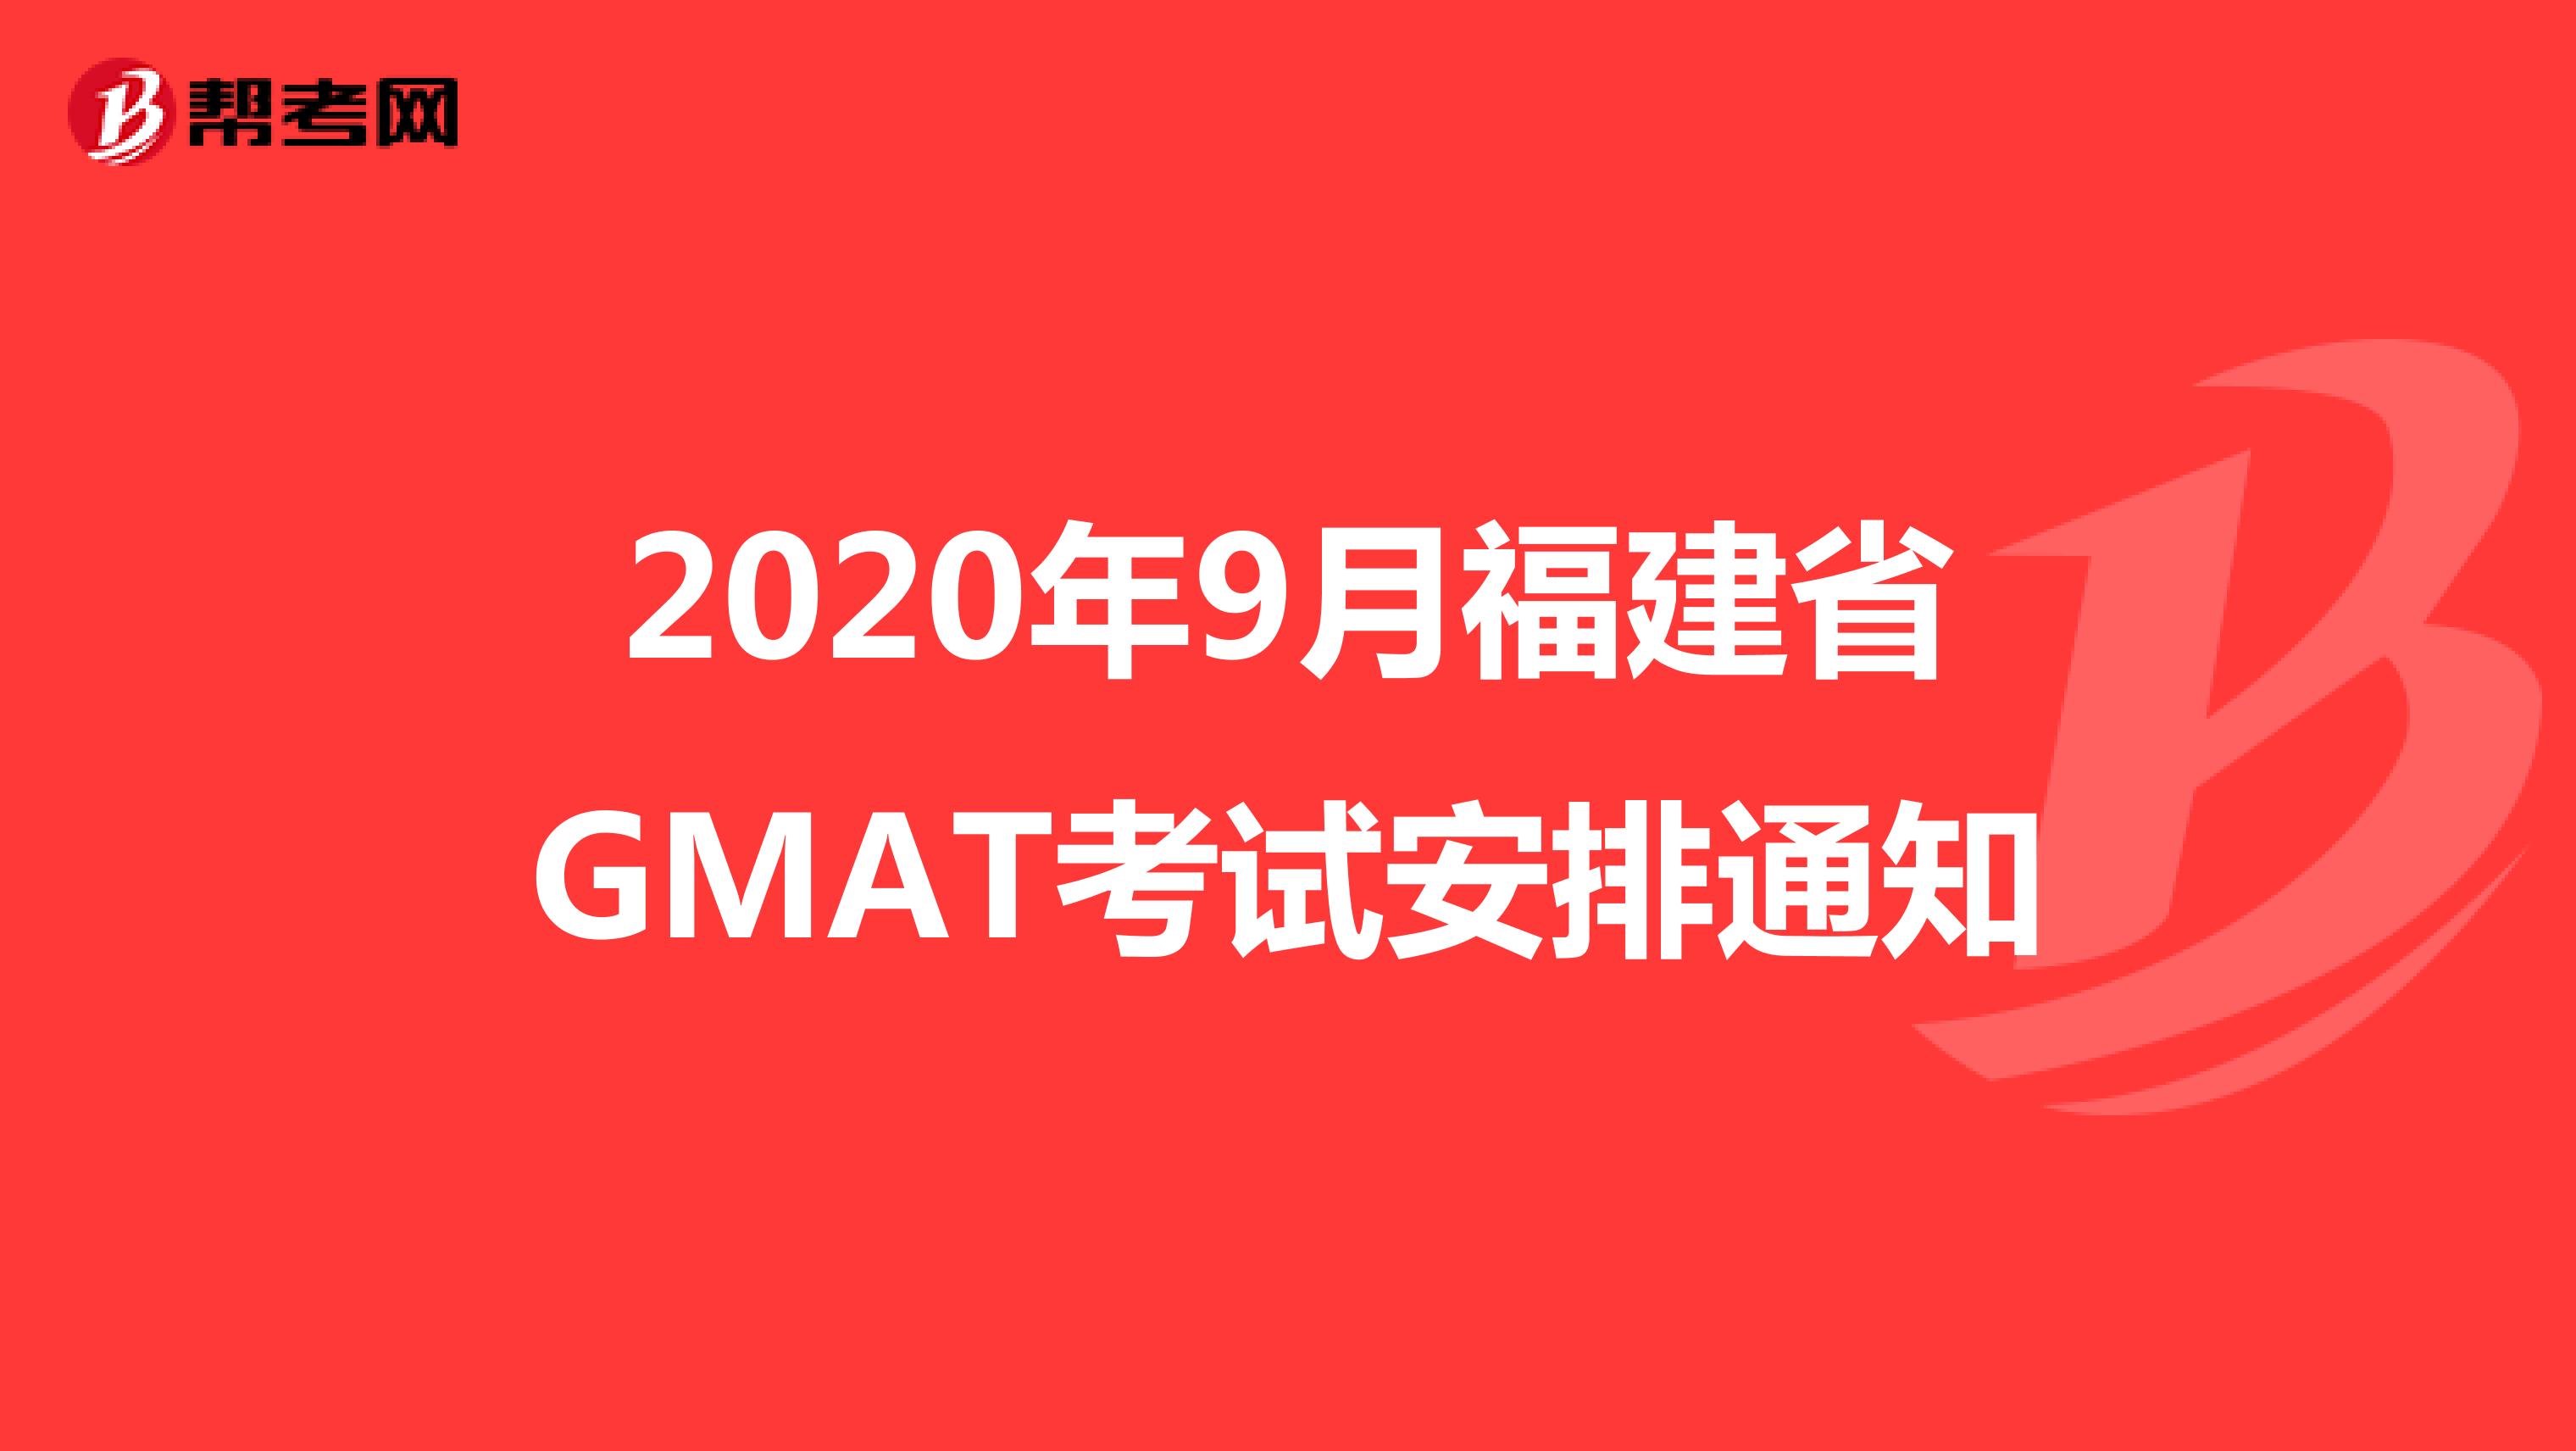 2020年9月福建省GMAT考试安排通知